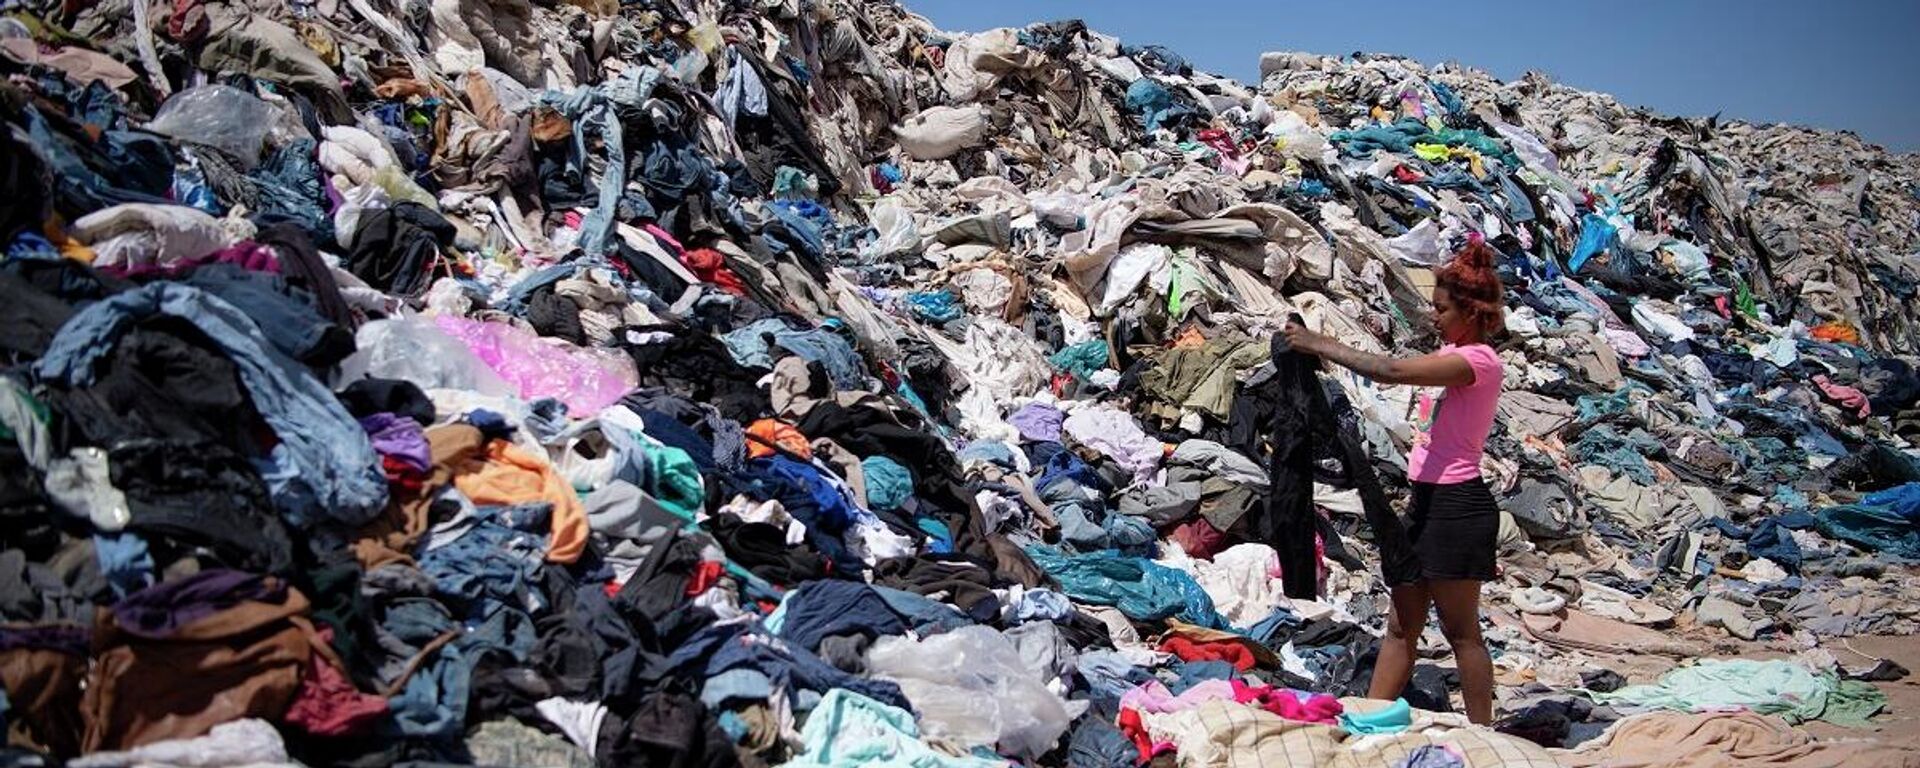 Hazır giyim endüstrisindeki hızlı tüketim, dünyanın en kurak çölü olan Şili'nin Atacama bölgesindeki çöplüklerde en az 39 bin ton atığın yığınlar oluşturmasına neden oldu. - Sputnik Türkiye, 1920, 09.11.2021